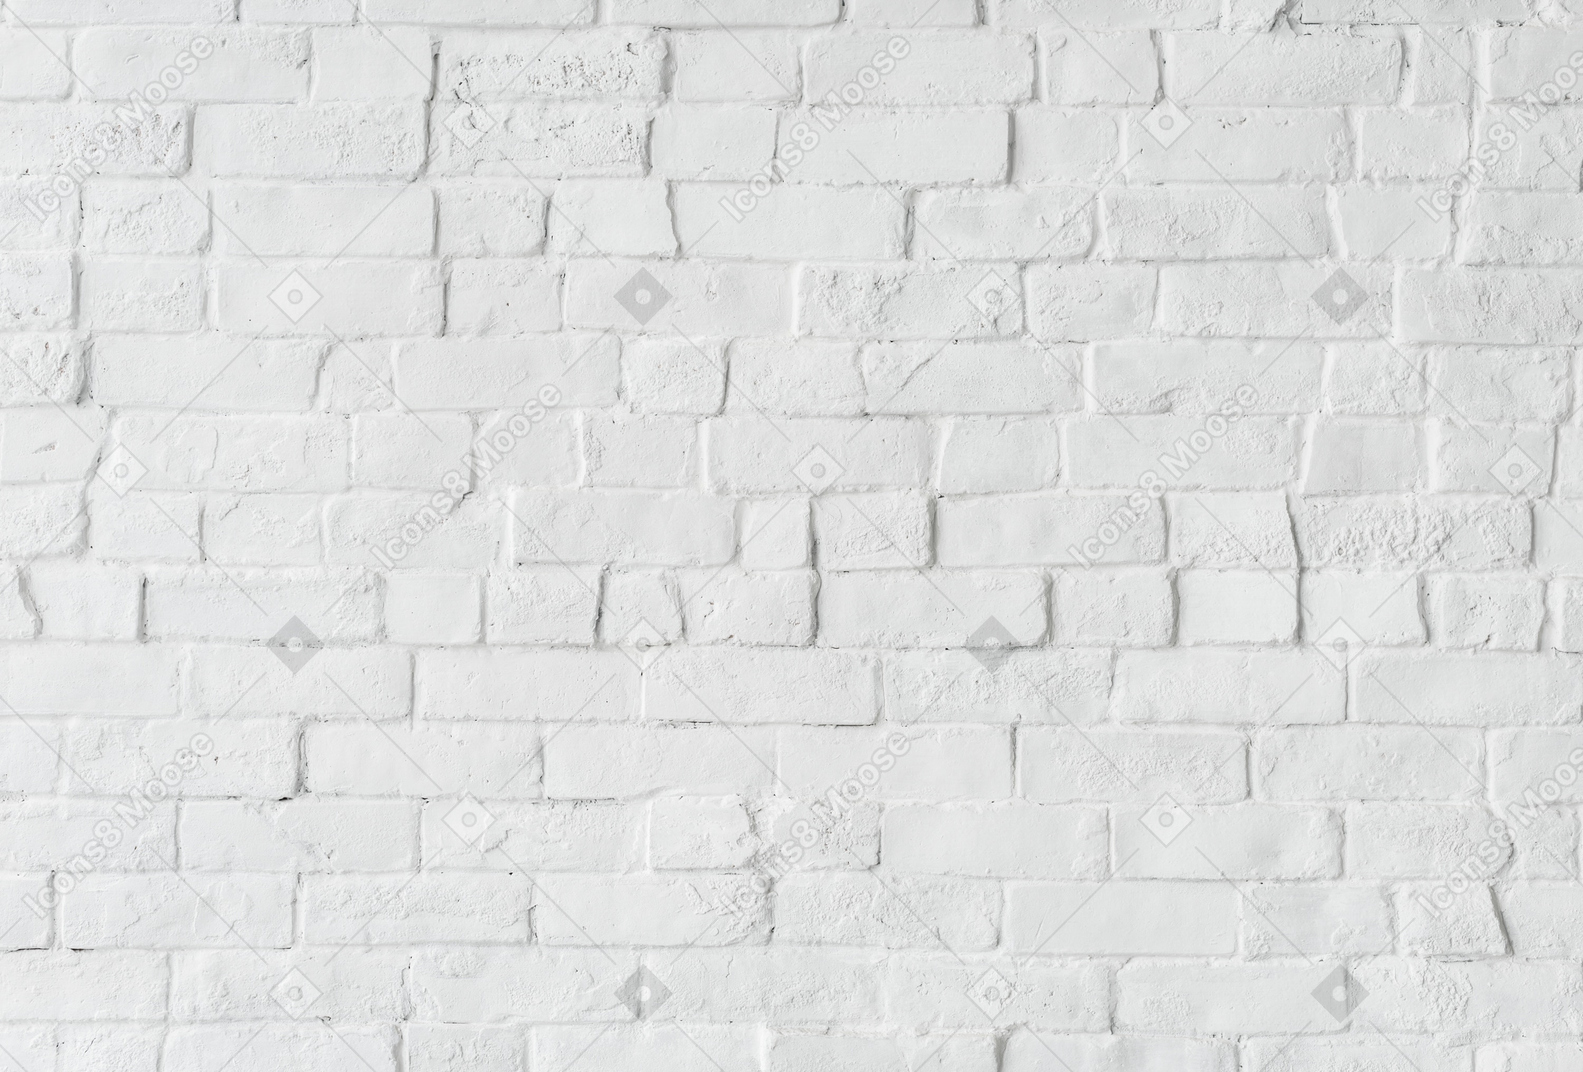 흰색 벽돌 벽 배경